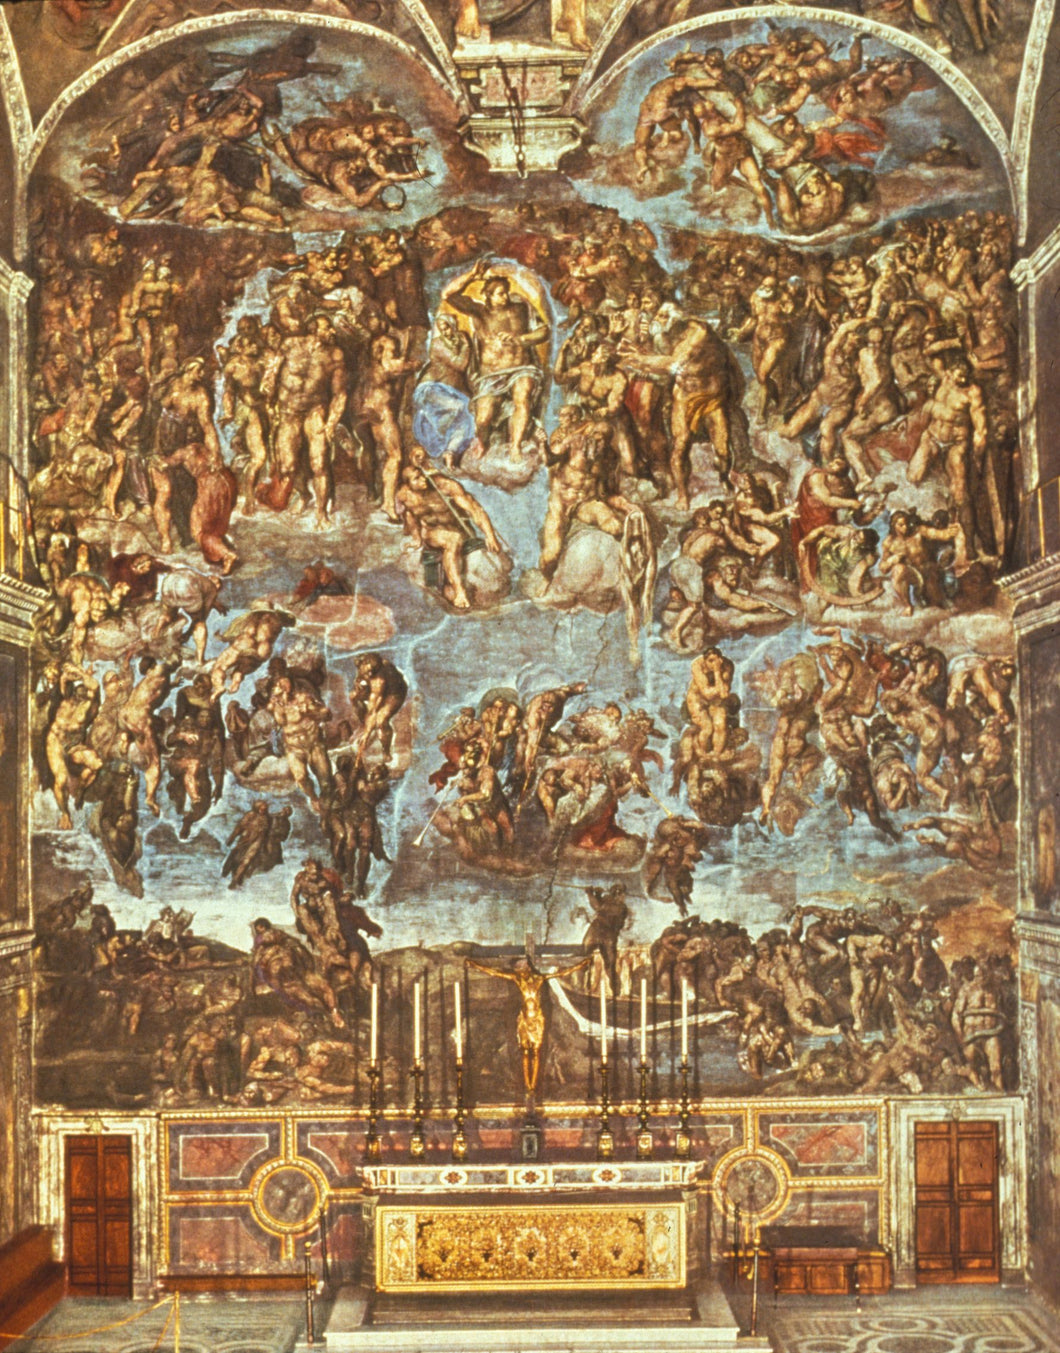 Michelanglo - Last Judgement by Michelangelo